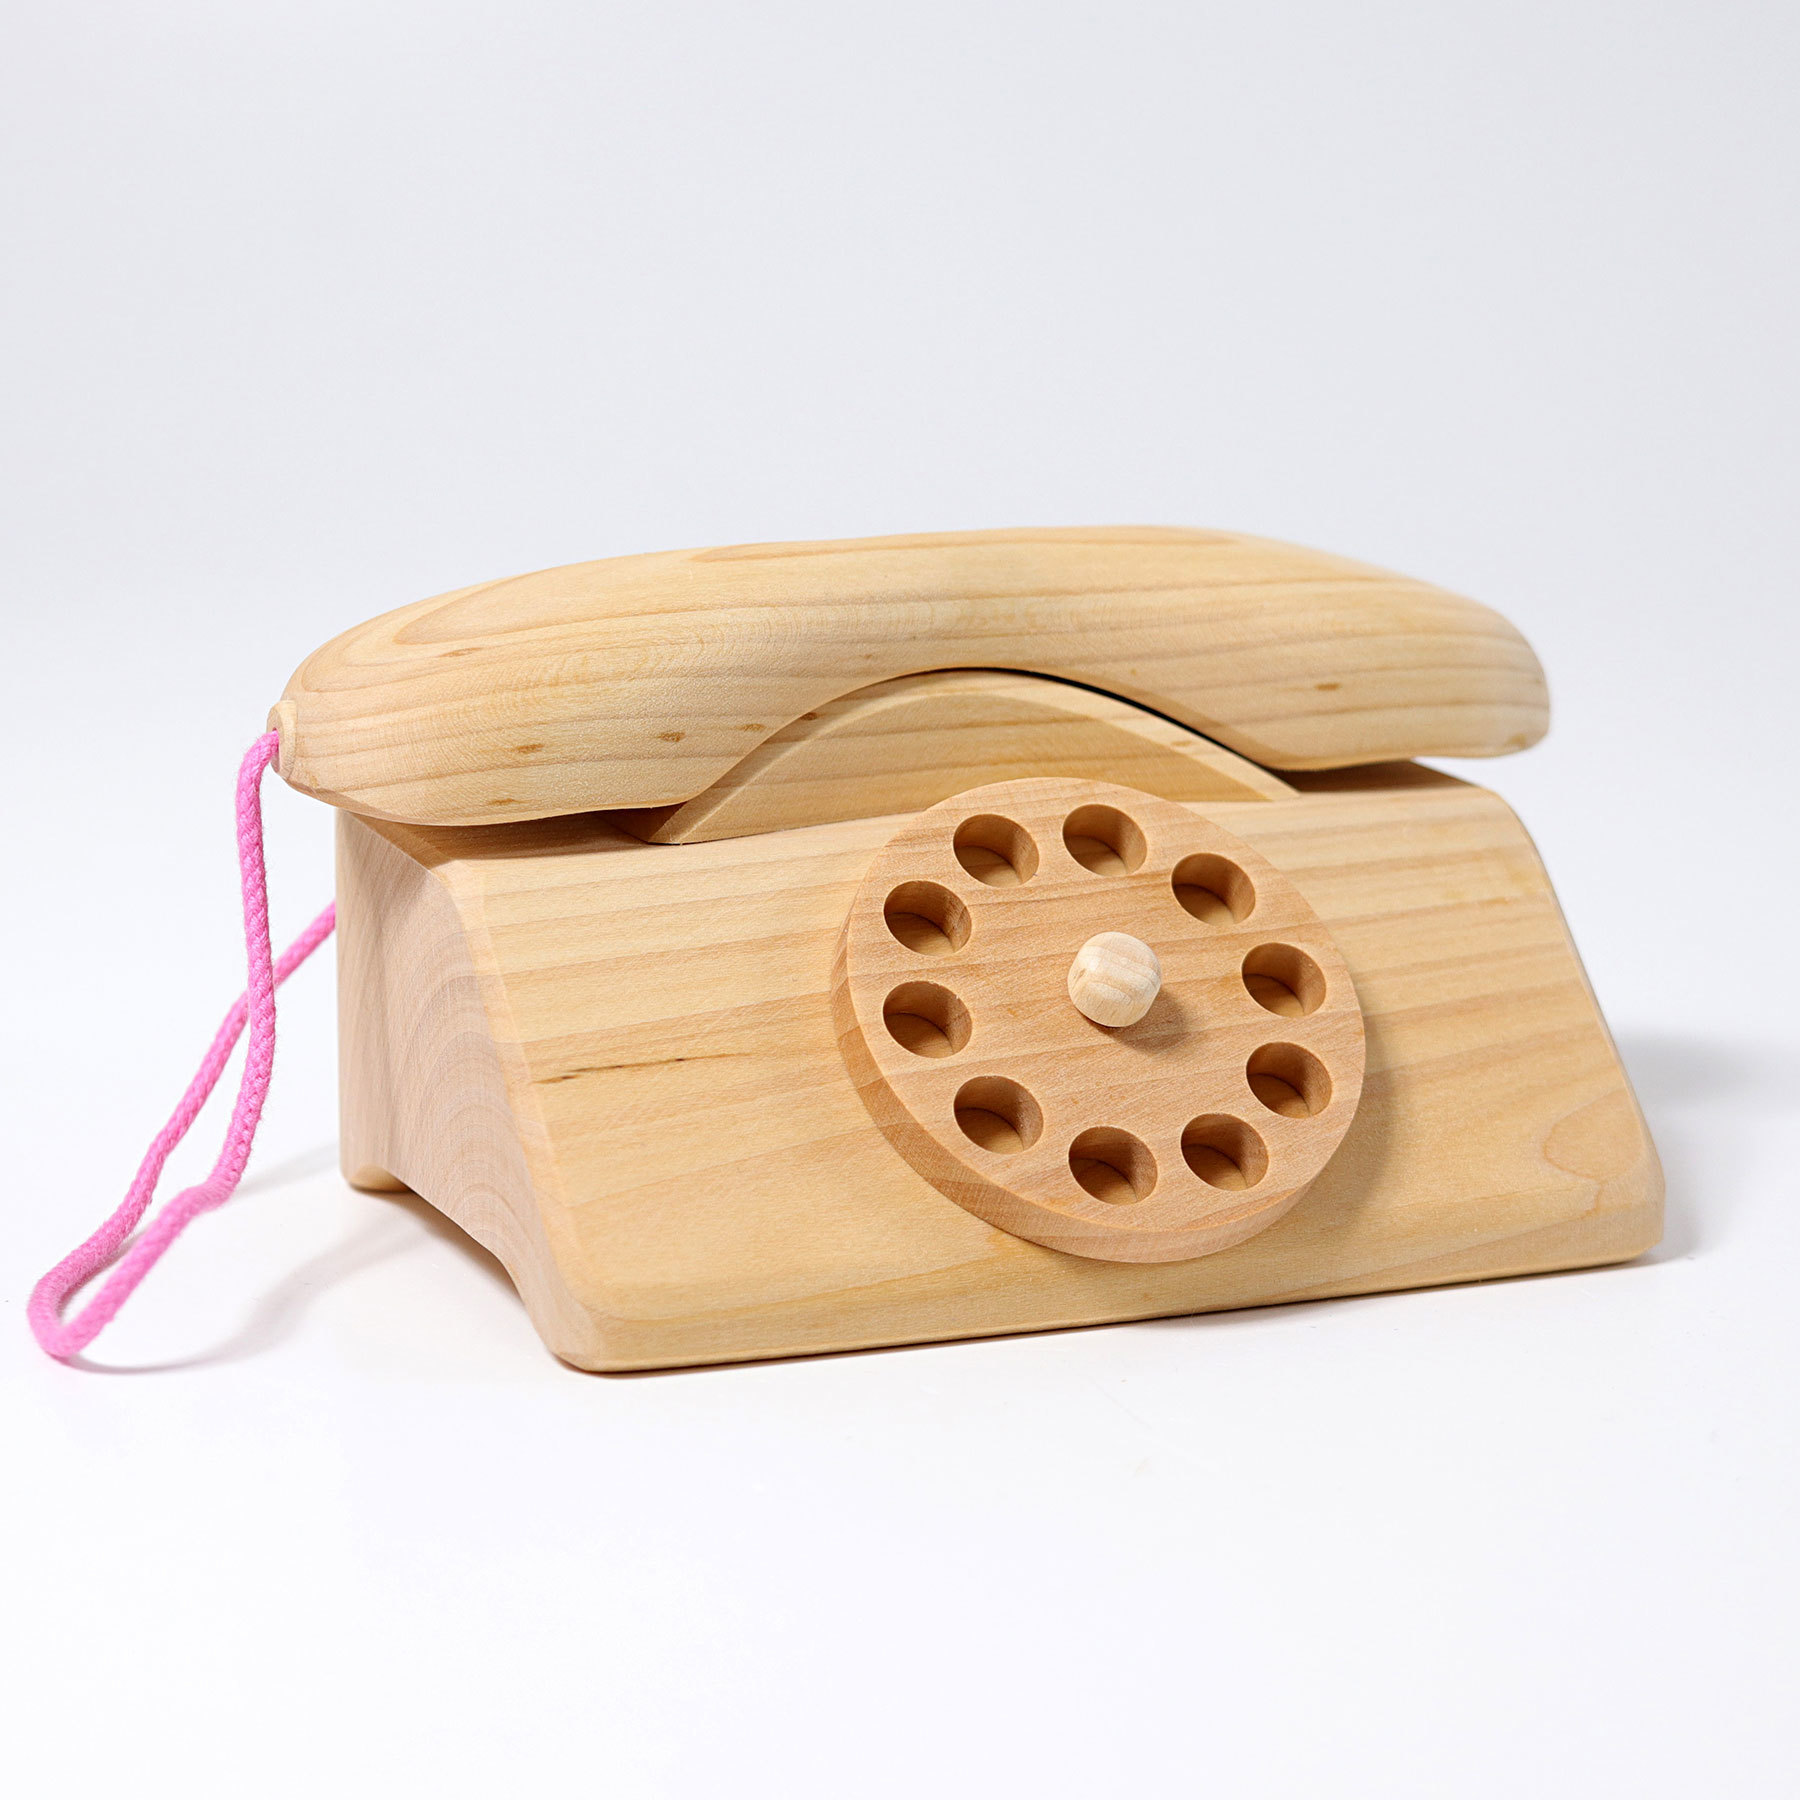 EcoToy.de: деревянные развивающие игрушки